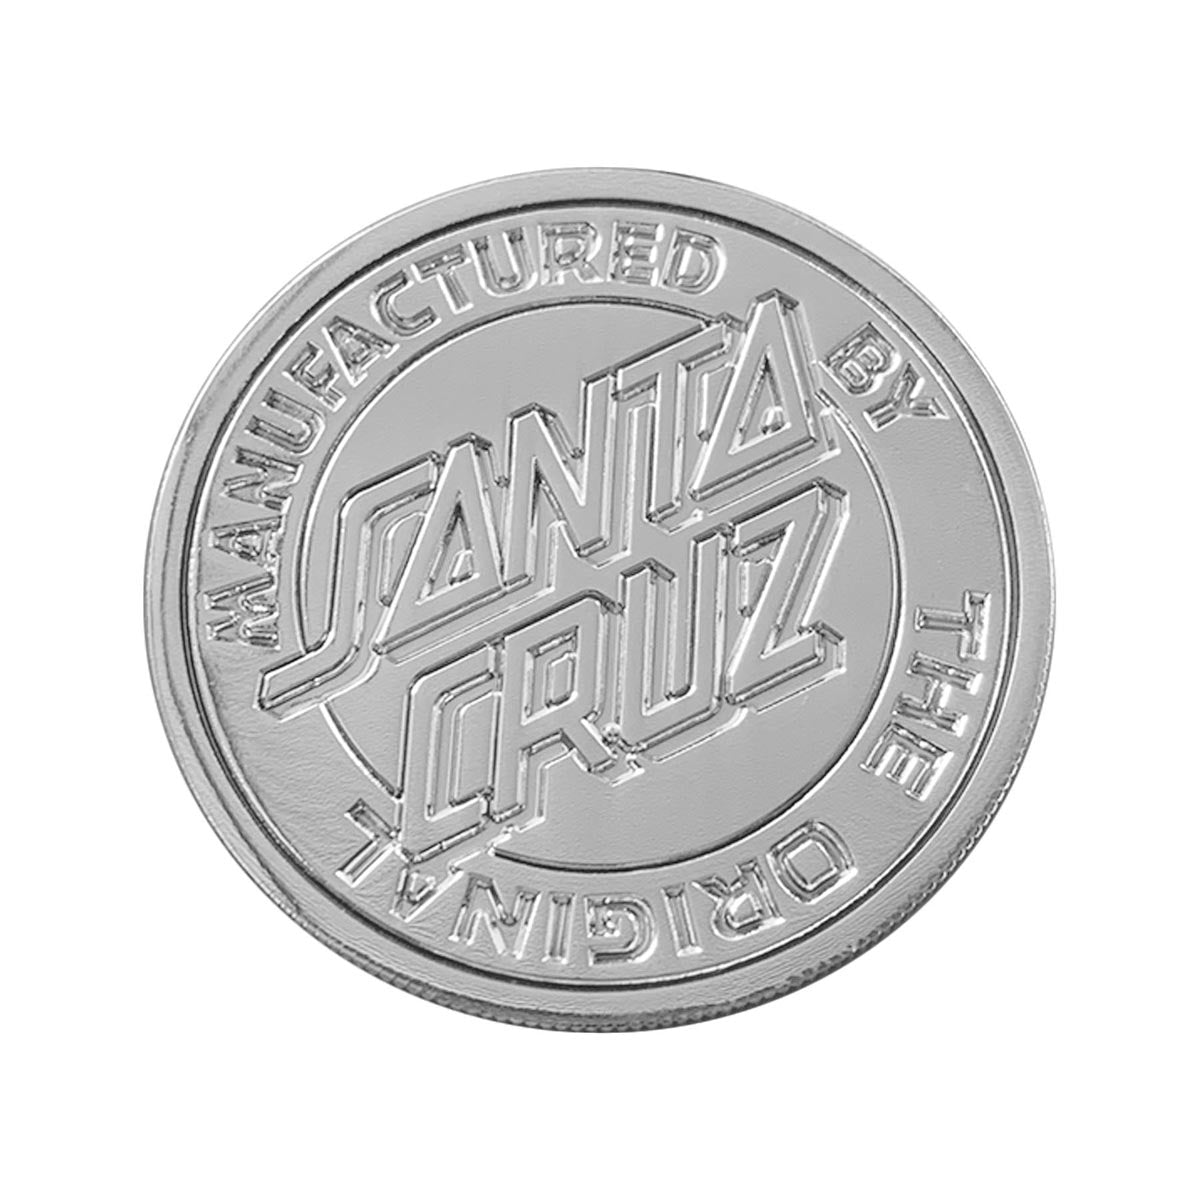 Santa Cruz Natas Screaming Panther Medallion - Silver image 2